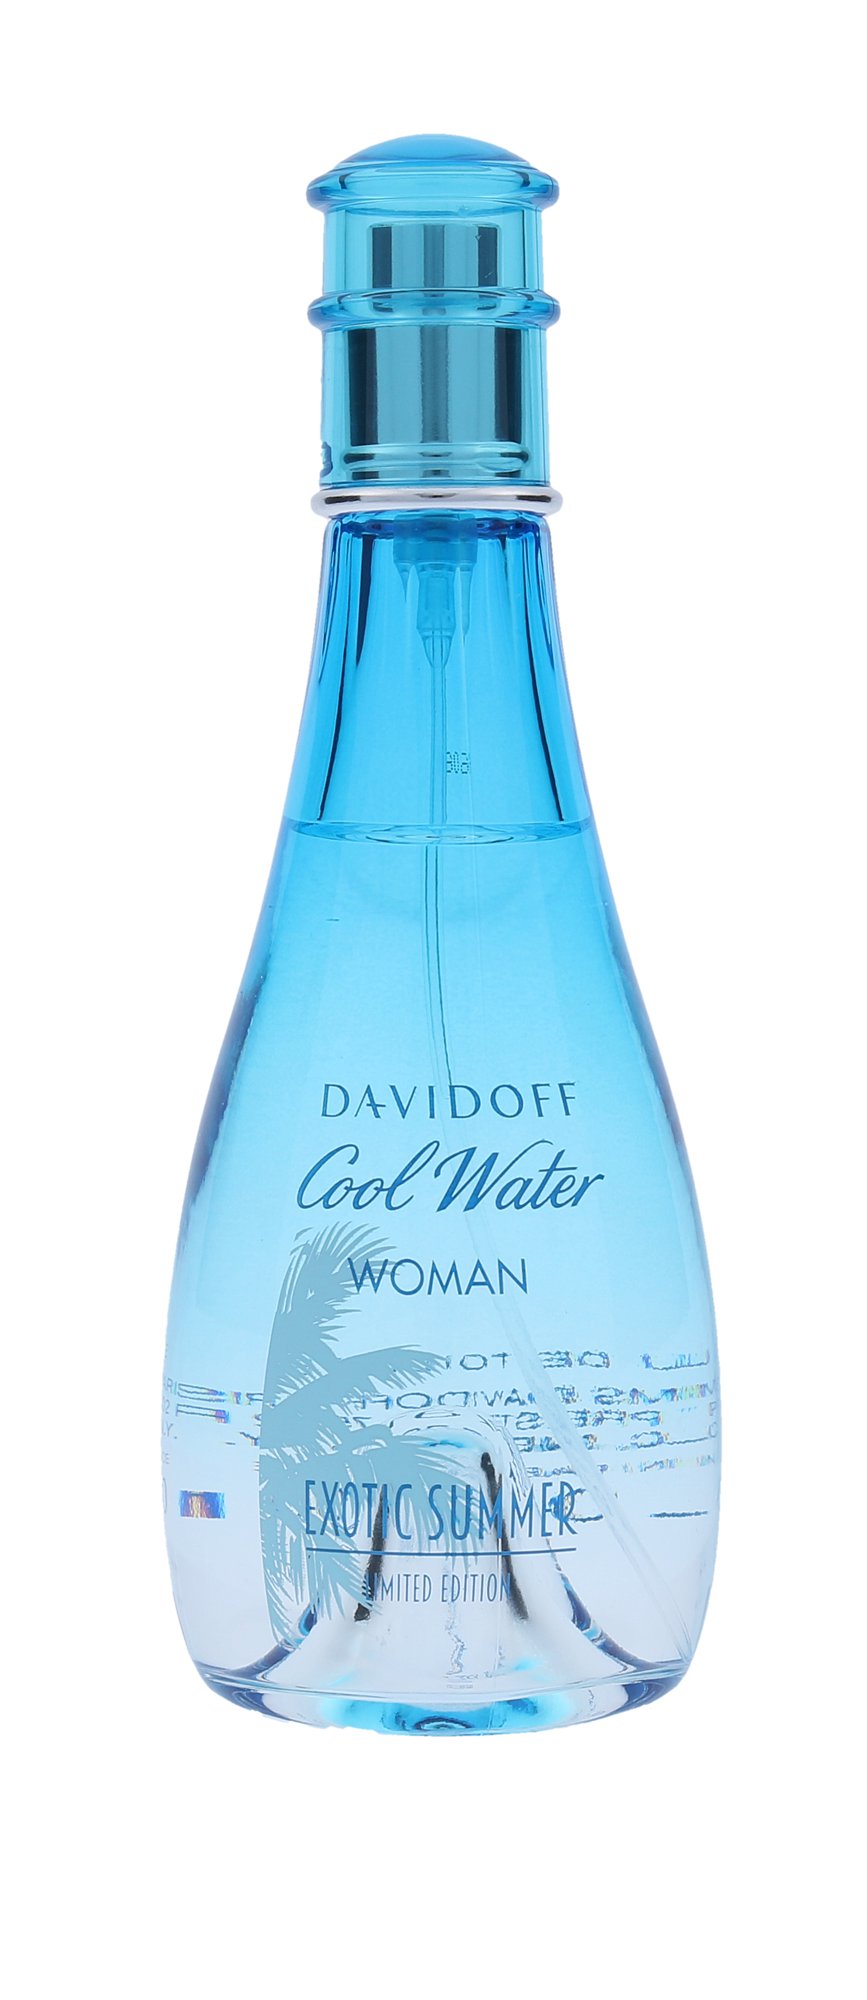 Davidoff Cool Water Exotic Summer, Toaletní voda 80ml - Tester